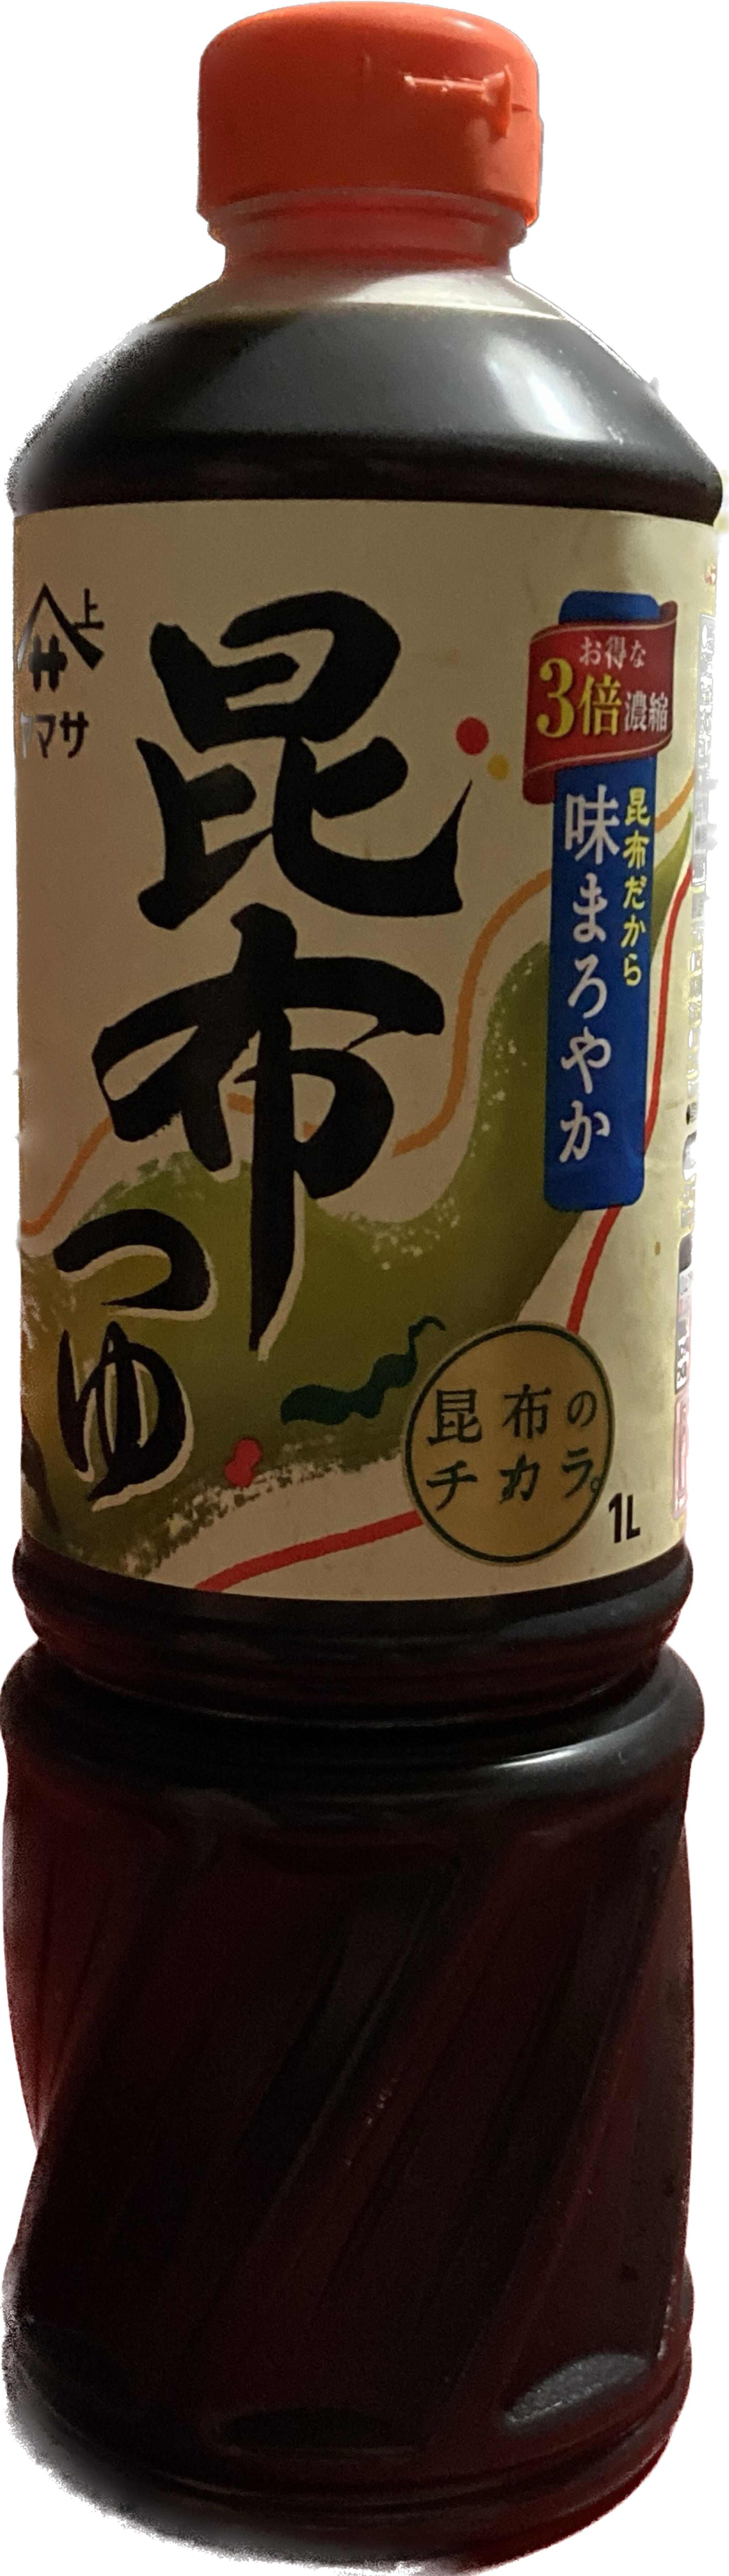 ヤマサ醤油株式会社の代表写真2